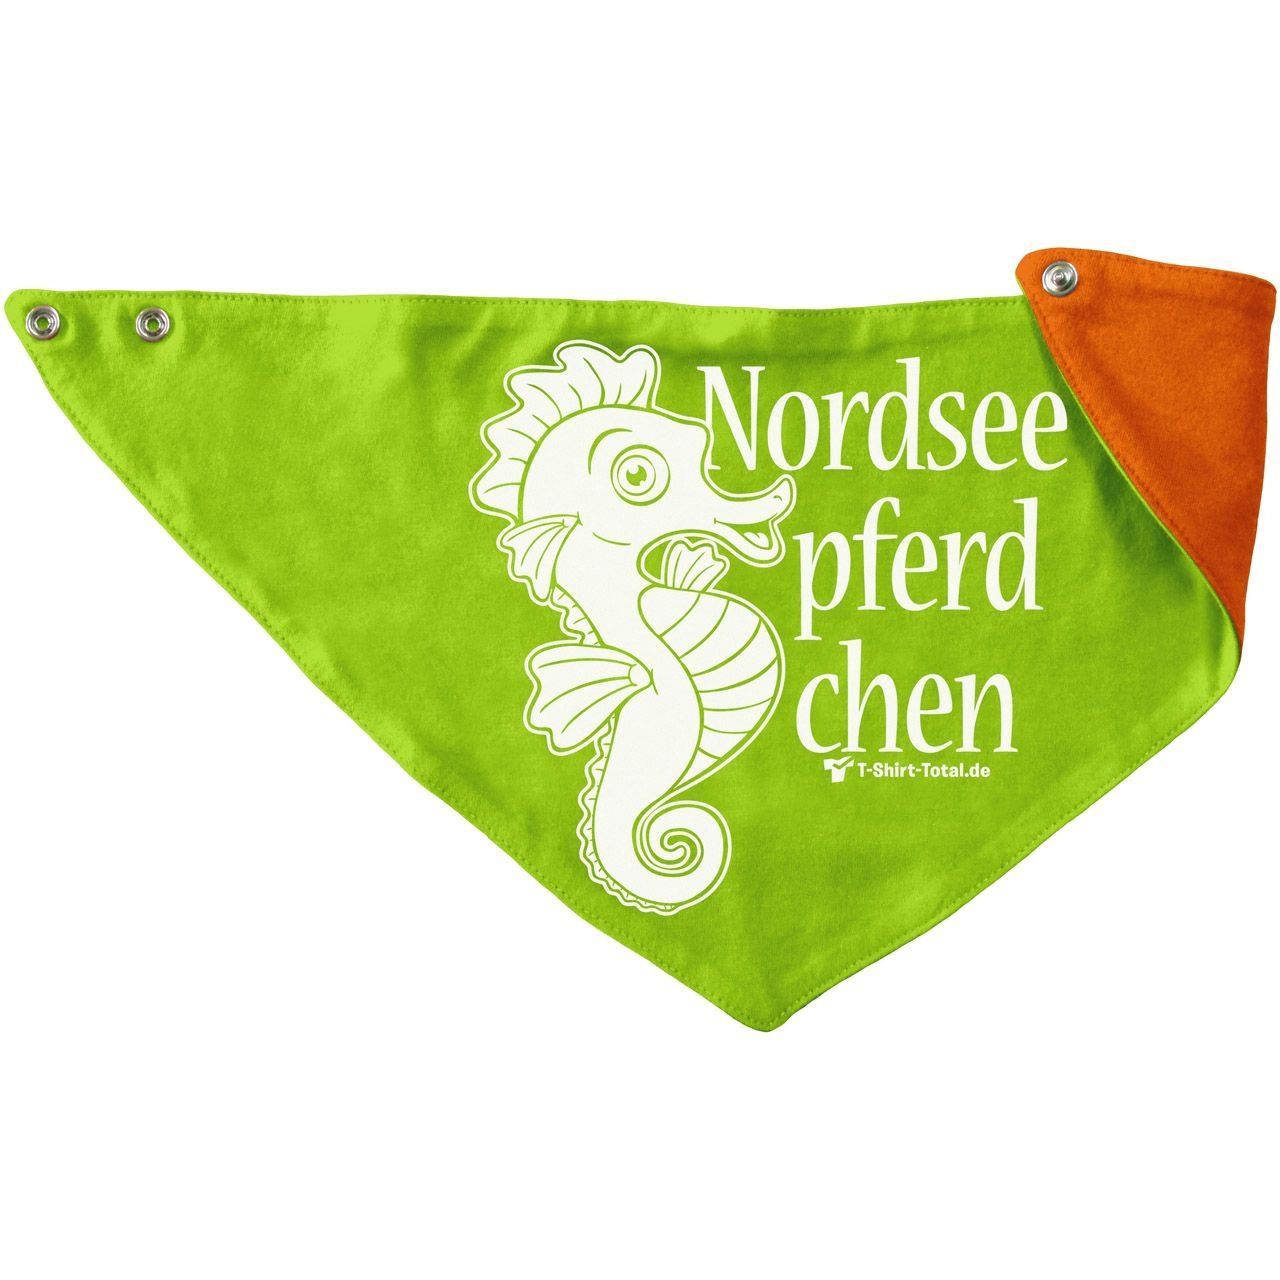 Nordseepferdchen Kinder Dreieckstuch hellgrün/orange